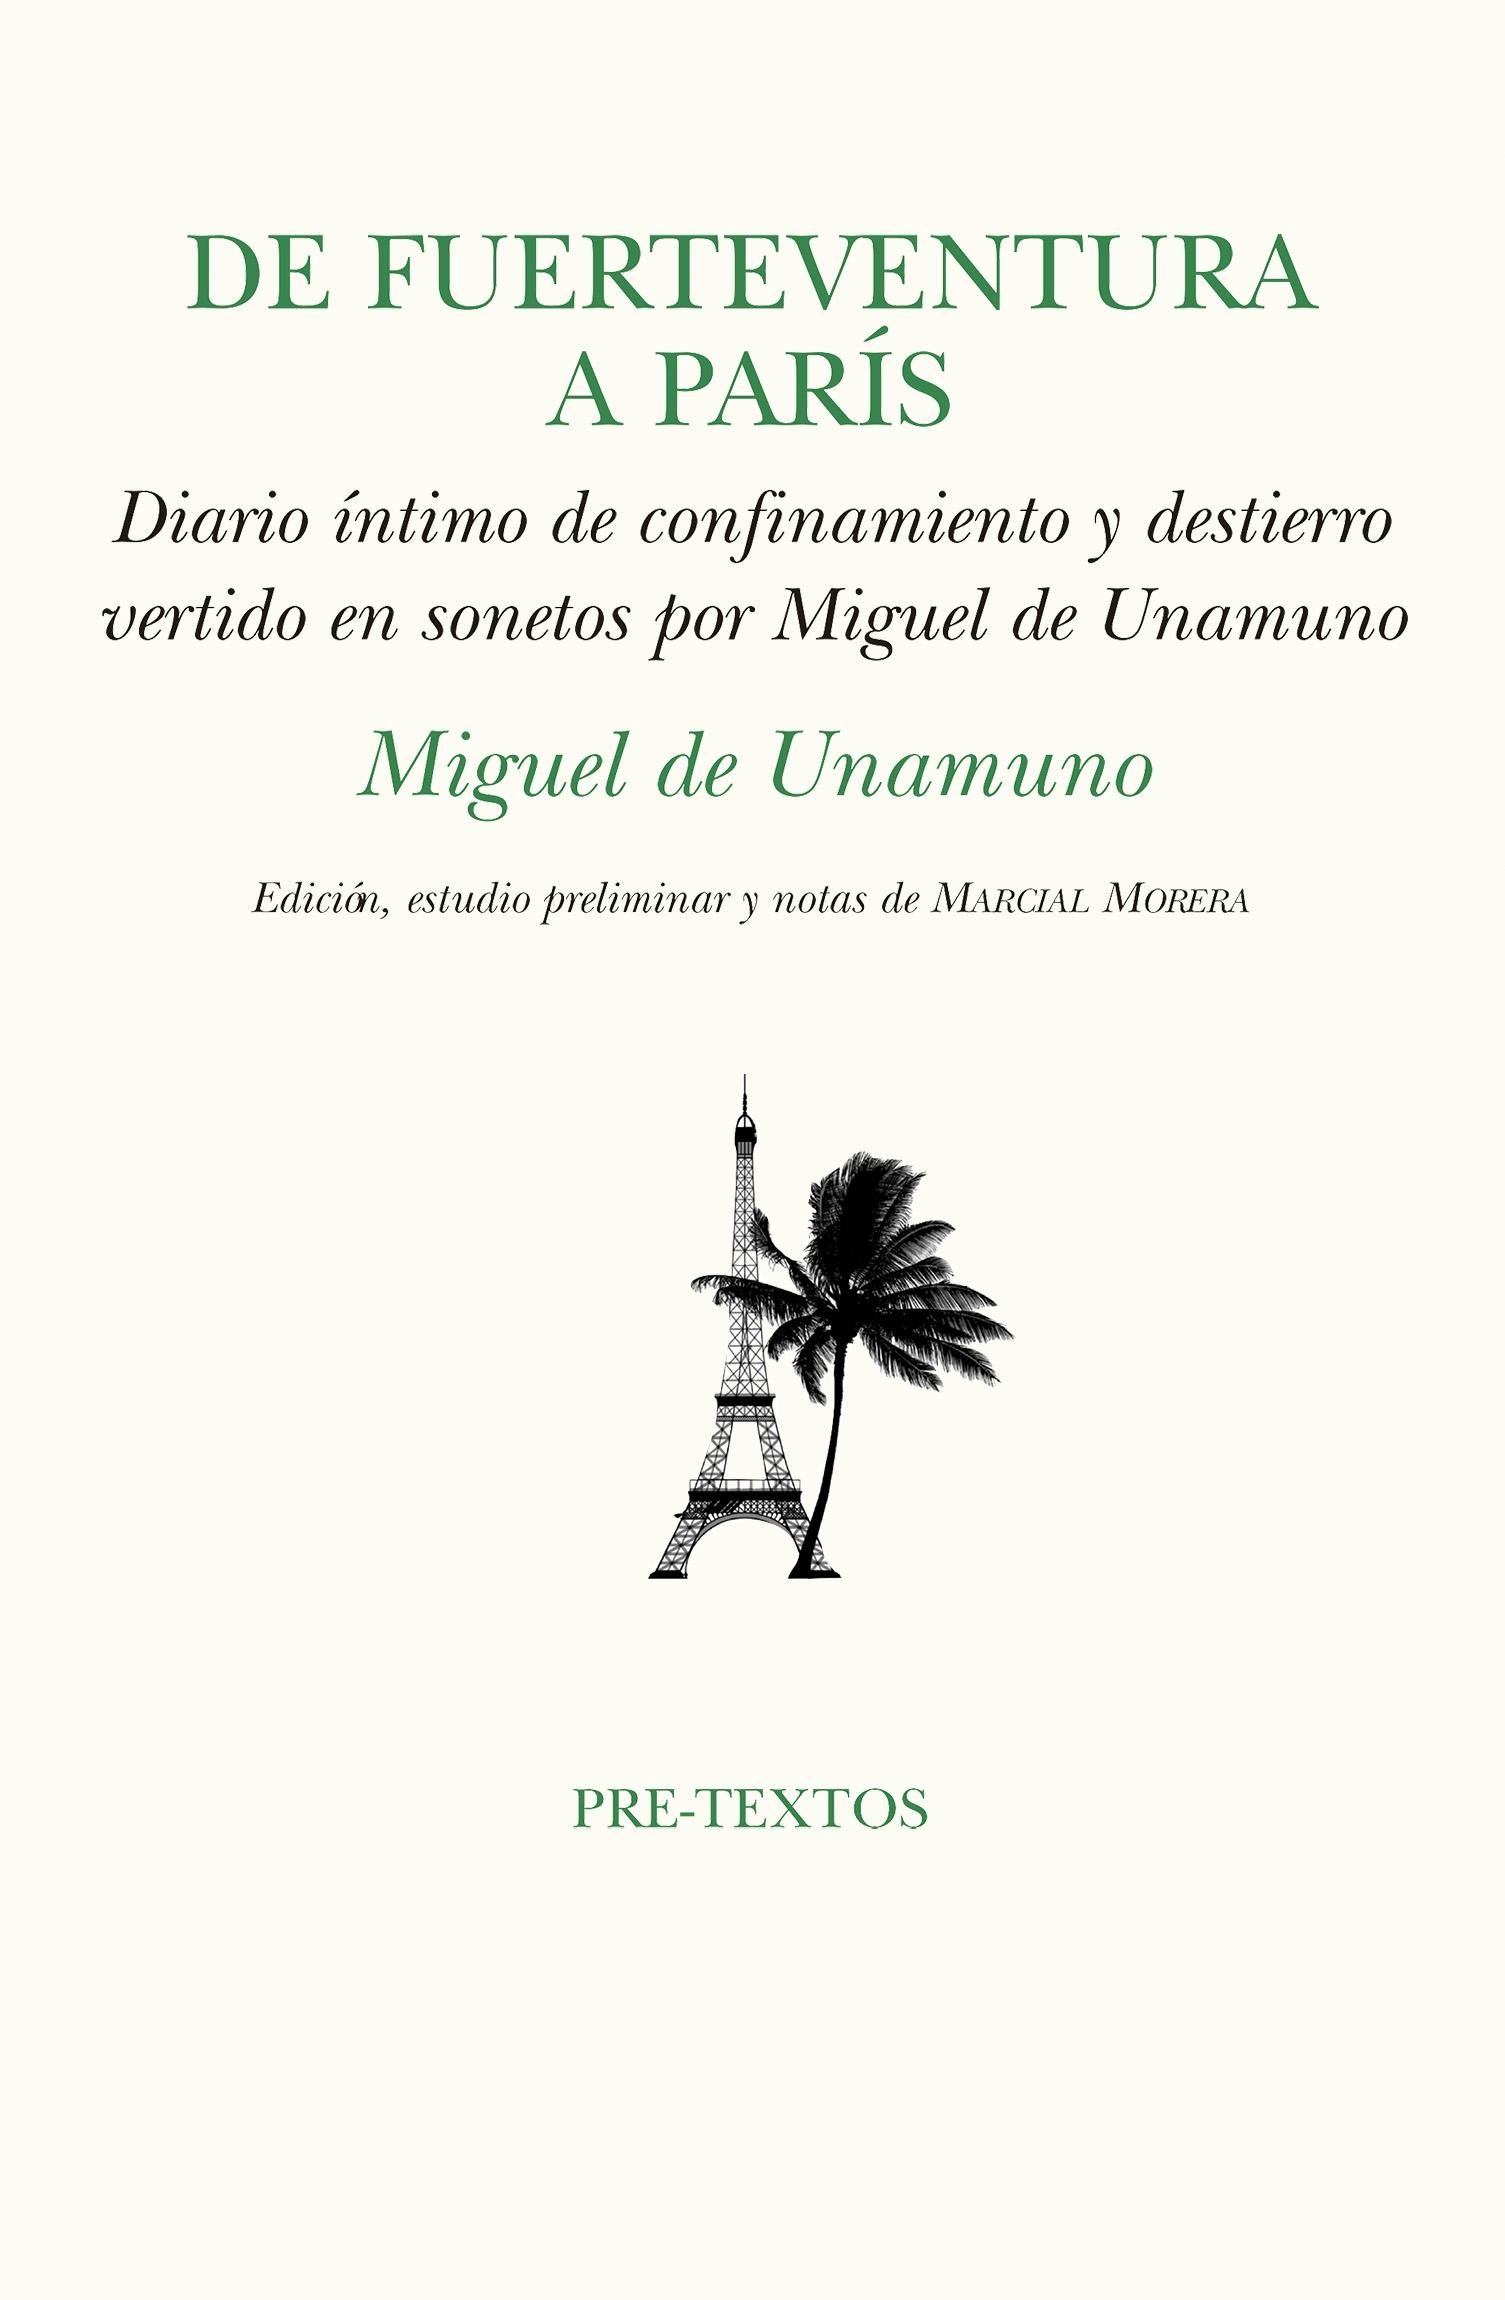 De Fuerteventura a París "confinamiento y destierro vertido en sonetos por Miguel de Unamuno". 